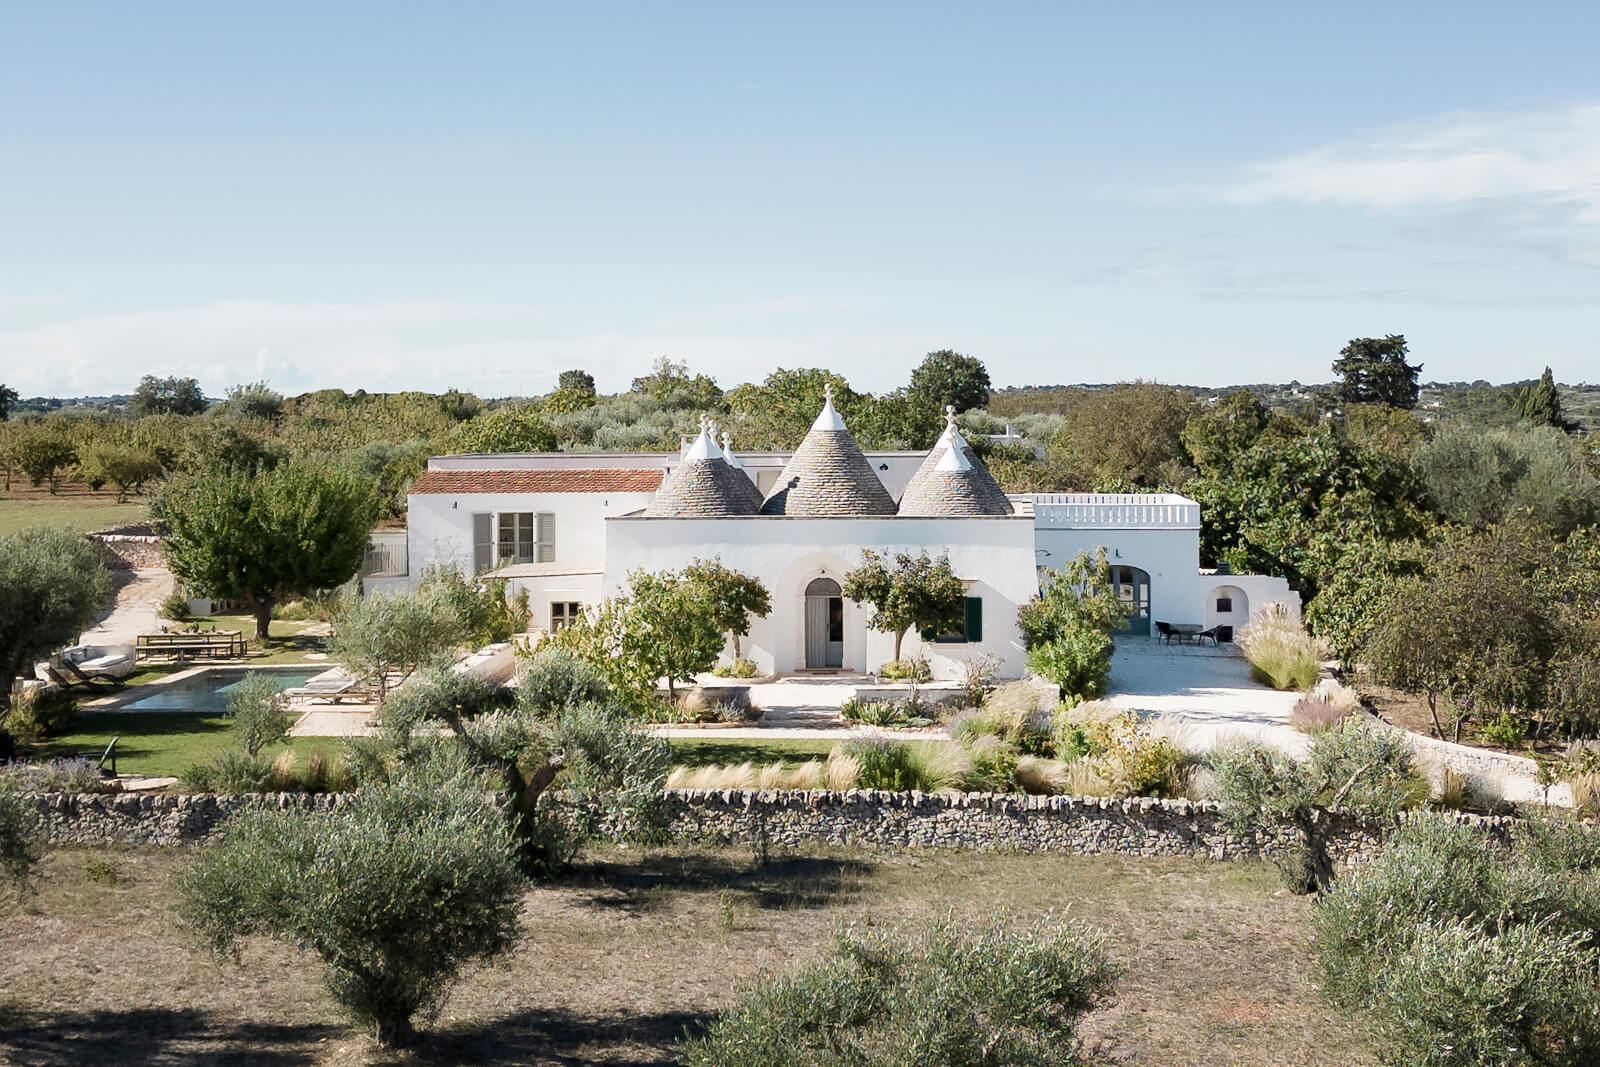 Une maison authentique dans les Pouilles dans un paysage méditerranéen